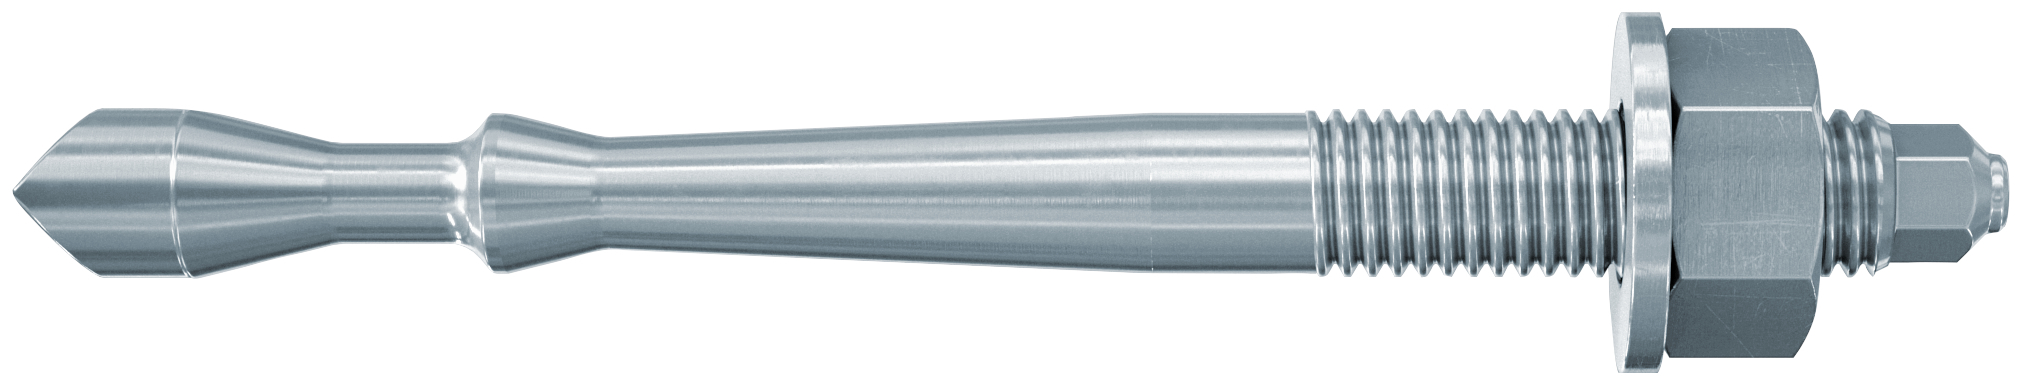 fischer Barra multicono in acciaio FHB II-A S M12x75/10 per ancorante chimico FIS HB (1 Pz.) Barra multicono corta in acciaio zincato classe 8.8. Massime prestazioni a trazione in calcestruzzo fessurato e a ridotte distanze dai bordi..